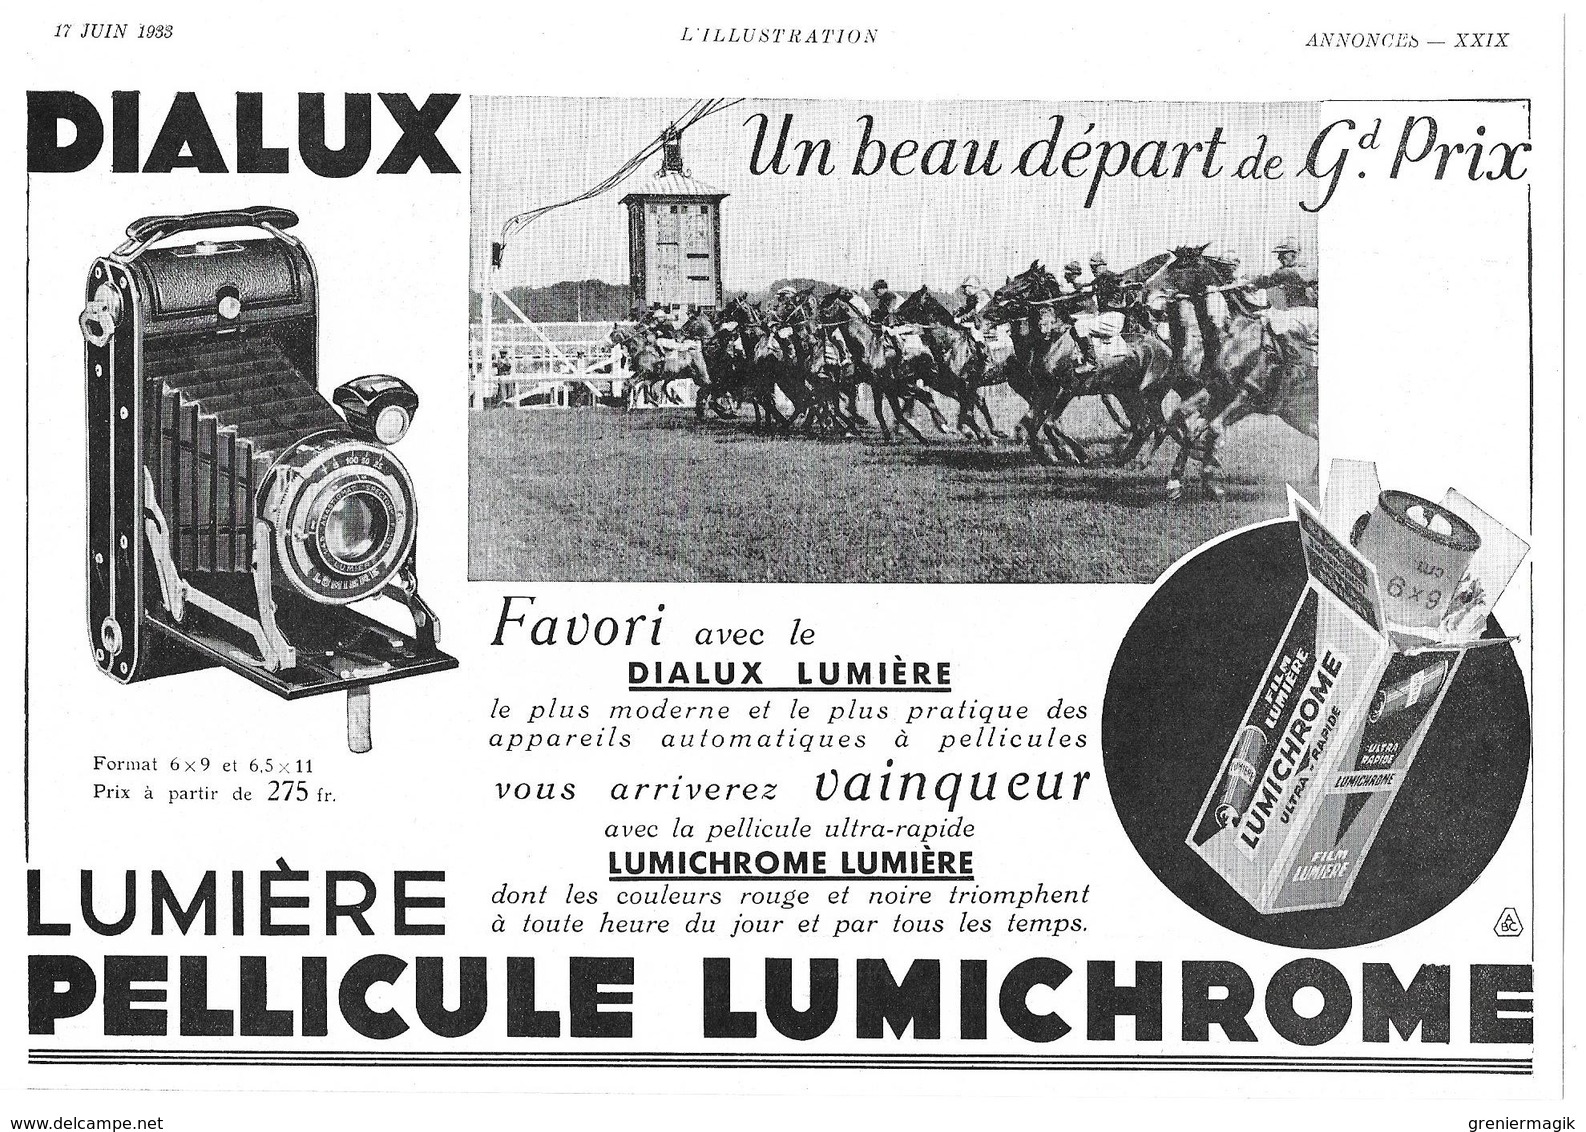 1933 Amilcar Cabriolet Décapotable (Automobile-Voiture-Usines à Saint-Denis) - Dialux Pellicule Lumichrome (publicité) - Publicités